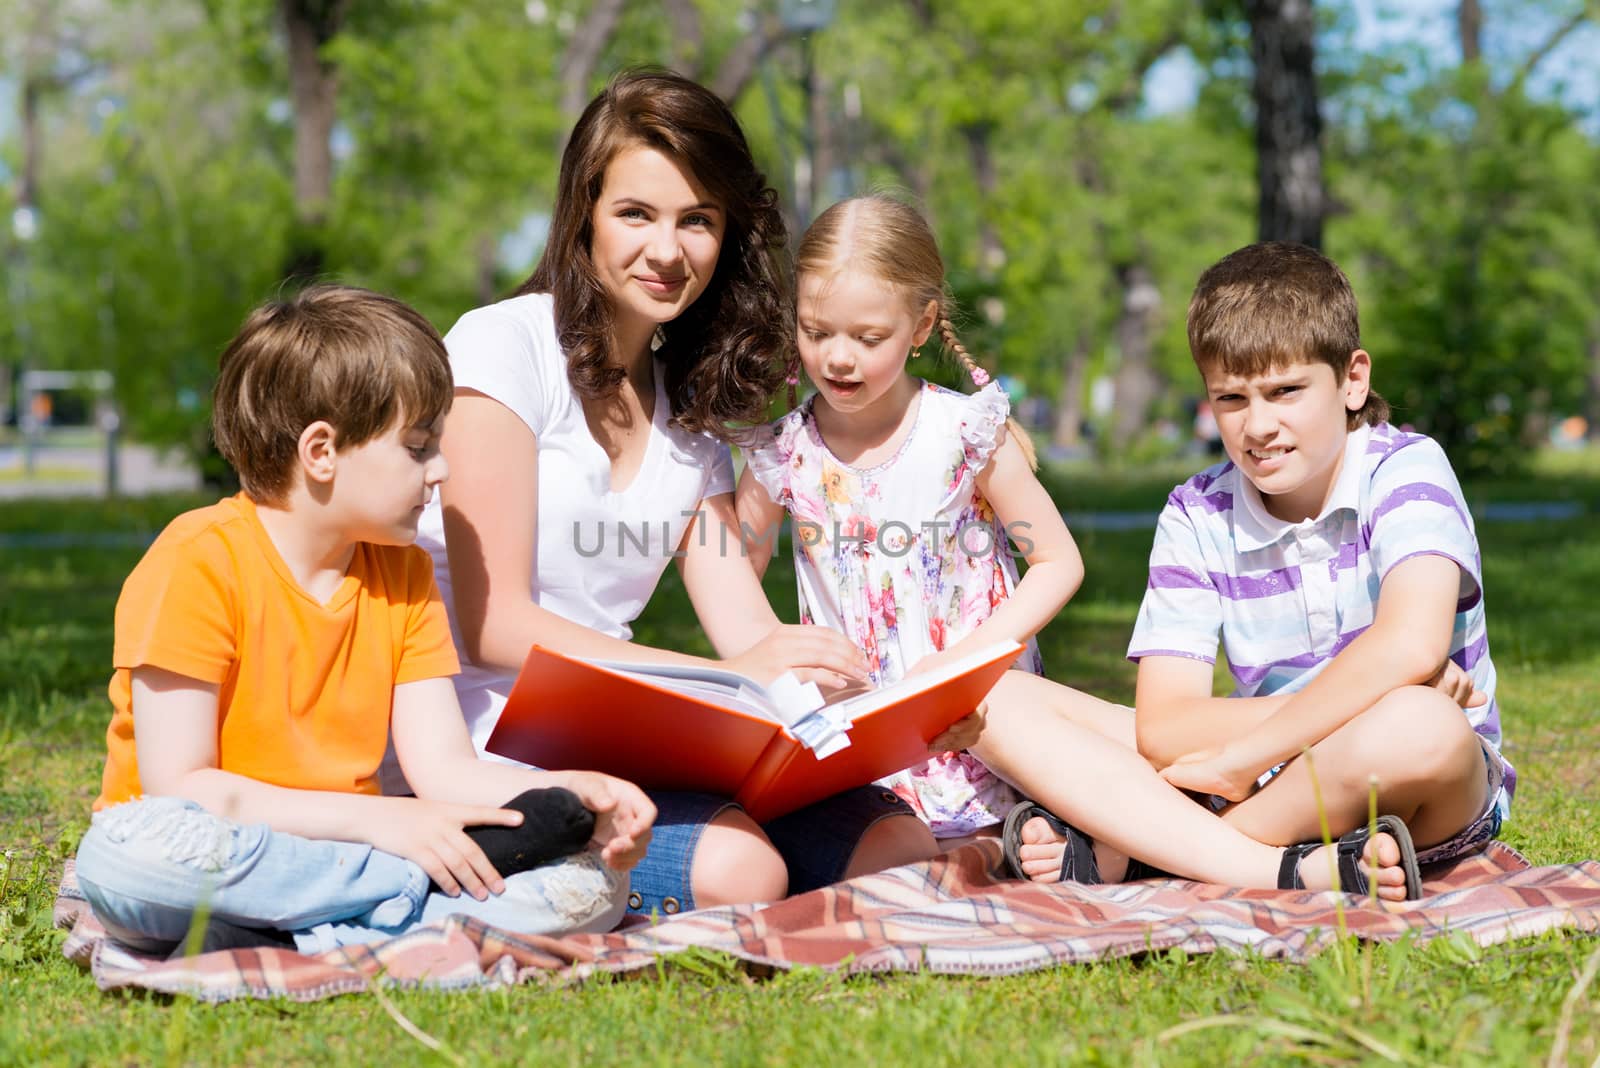 teacher reads a book to children in a summer park by adam121